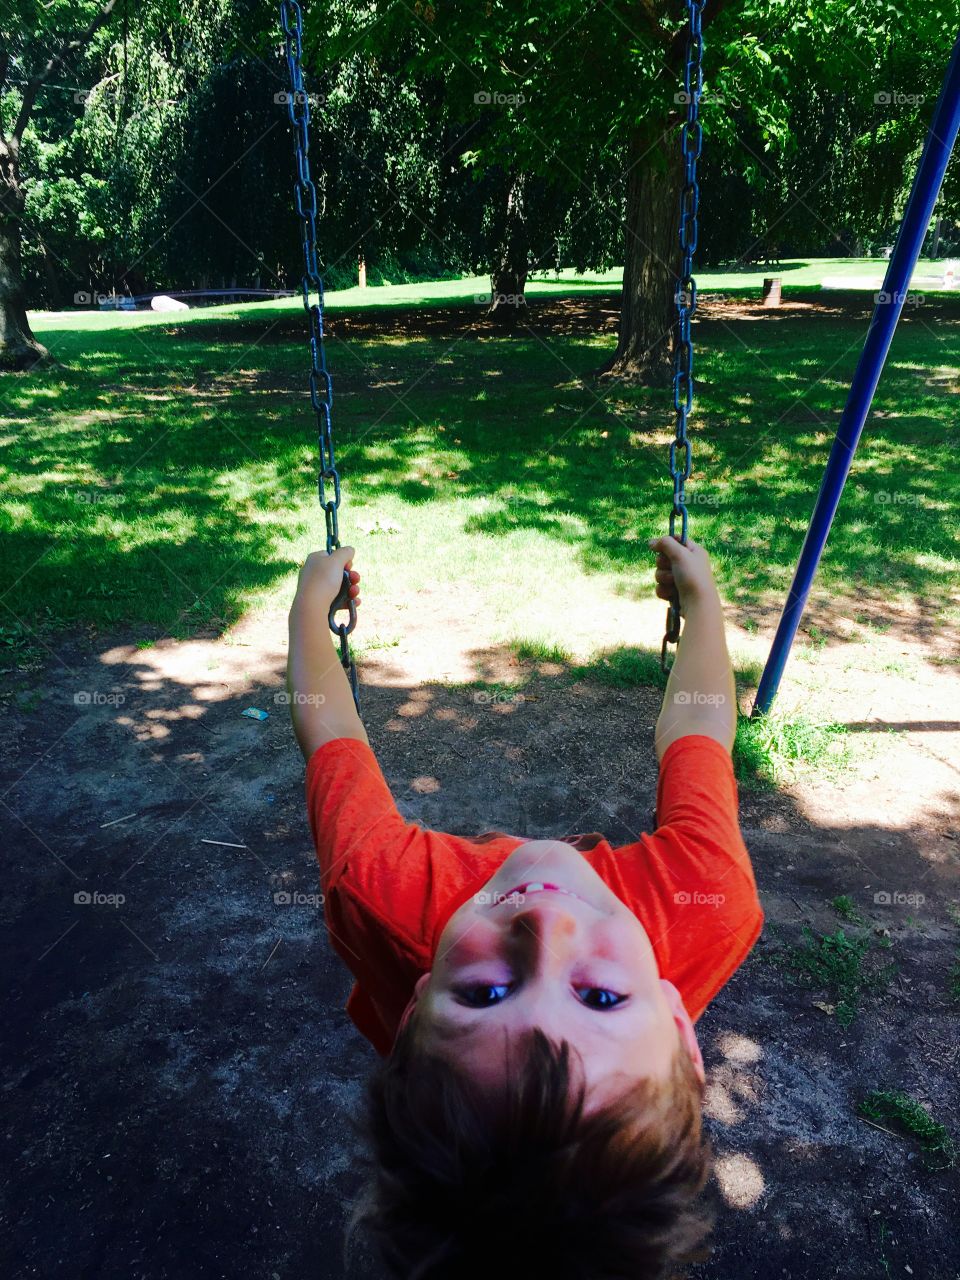 Upside down swing